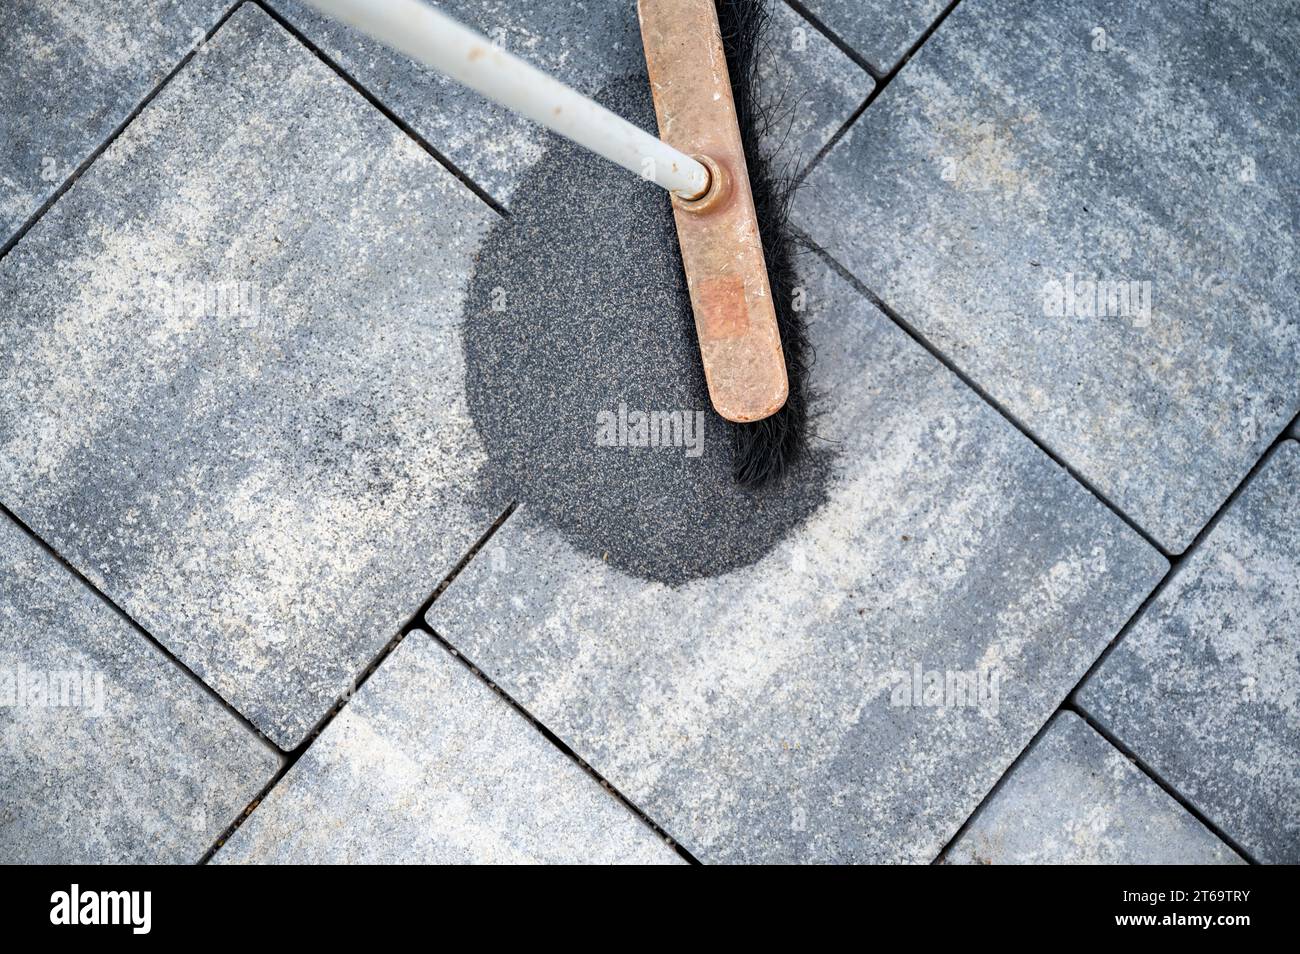 Vista dall'alto di una scopa spazzolando una lacuna di piastrelle tra gli spazi del marciapiede appena pavimentato o del patio con piastrelle di cemento grigie. Foto Stock